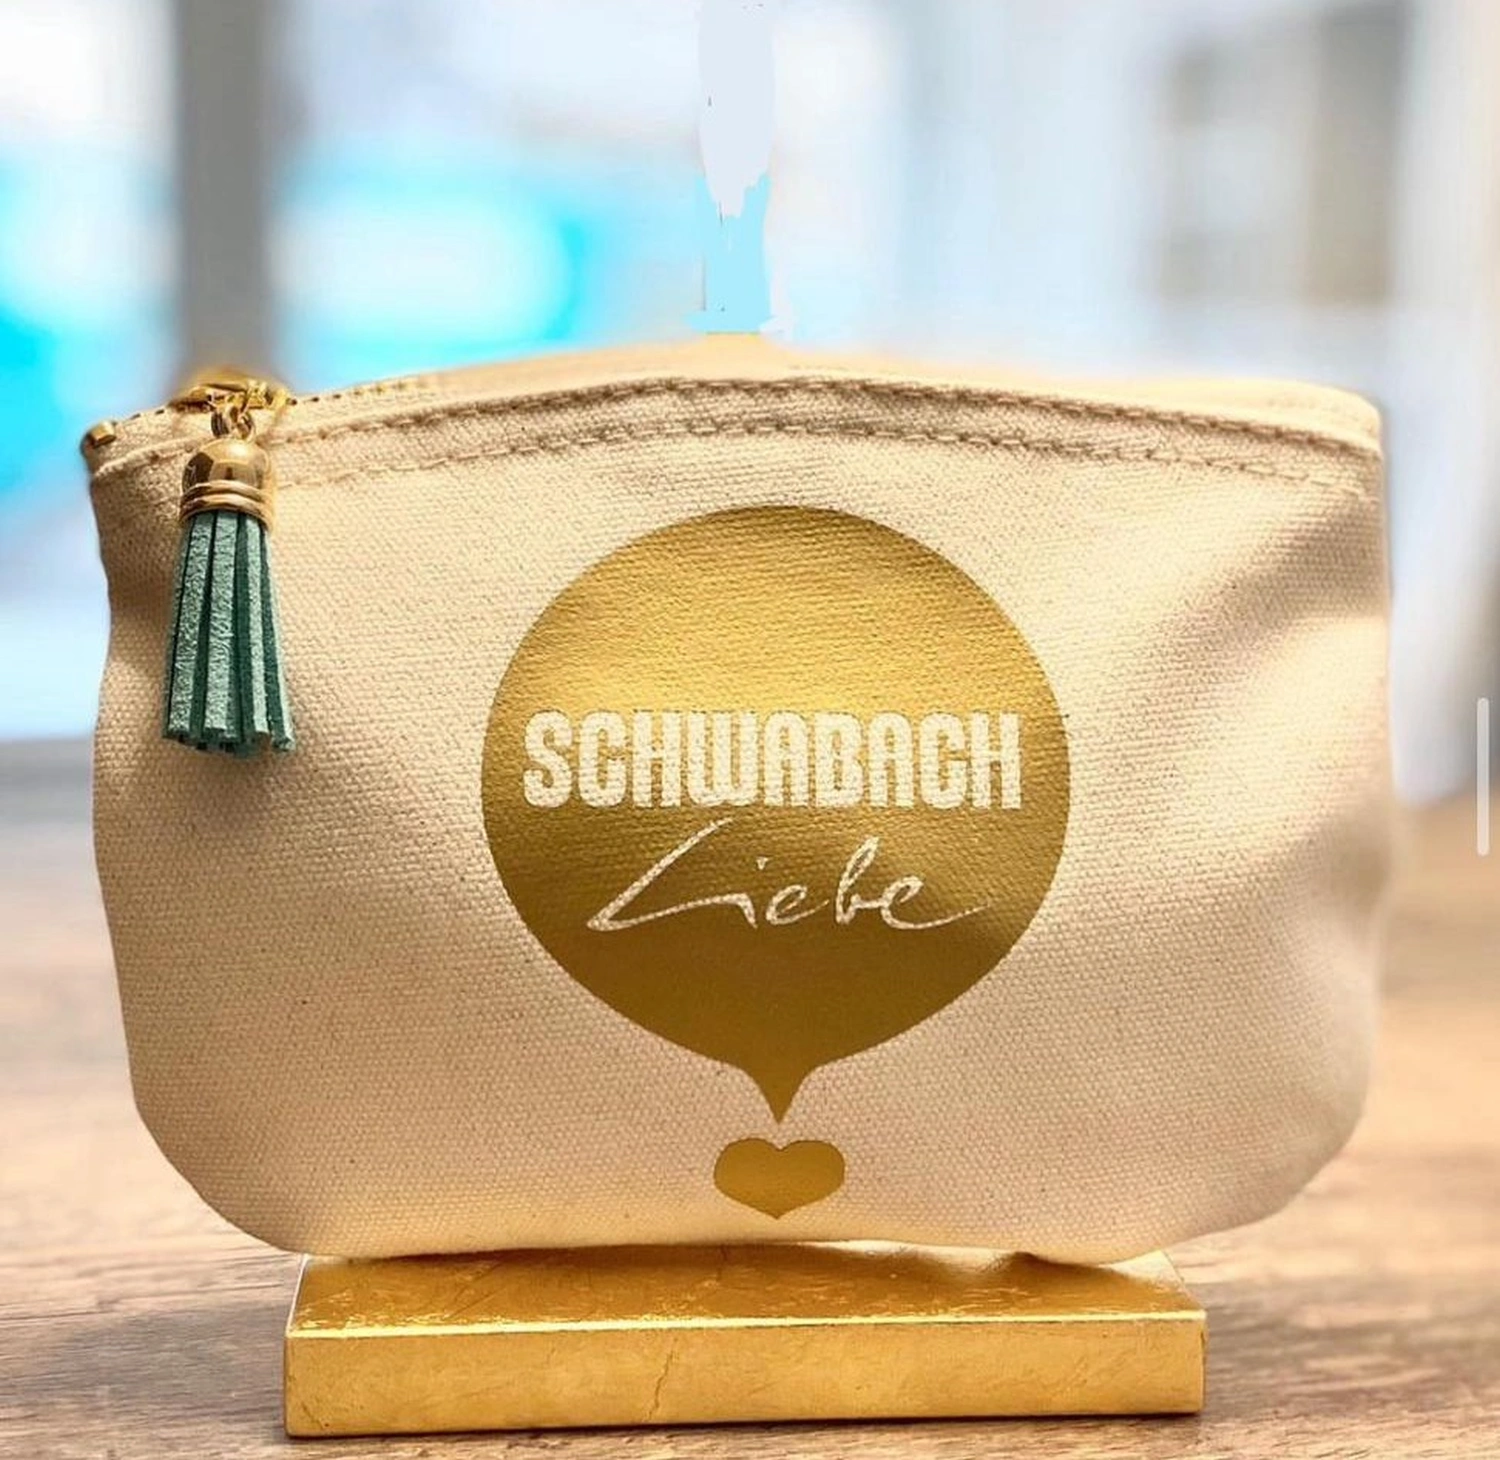 Schwabach Liebe Geschenke